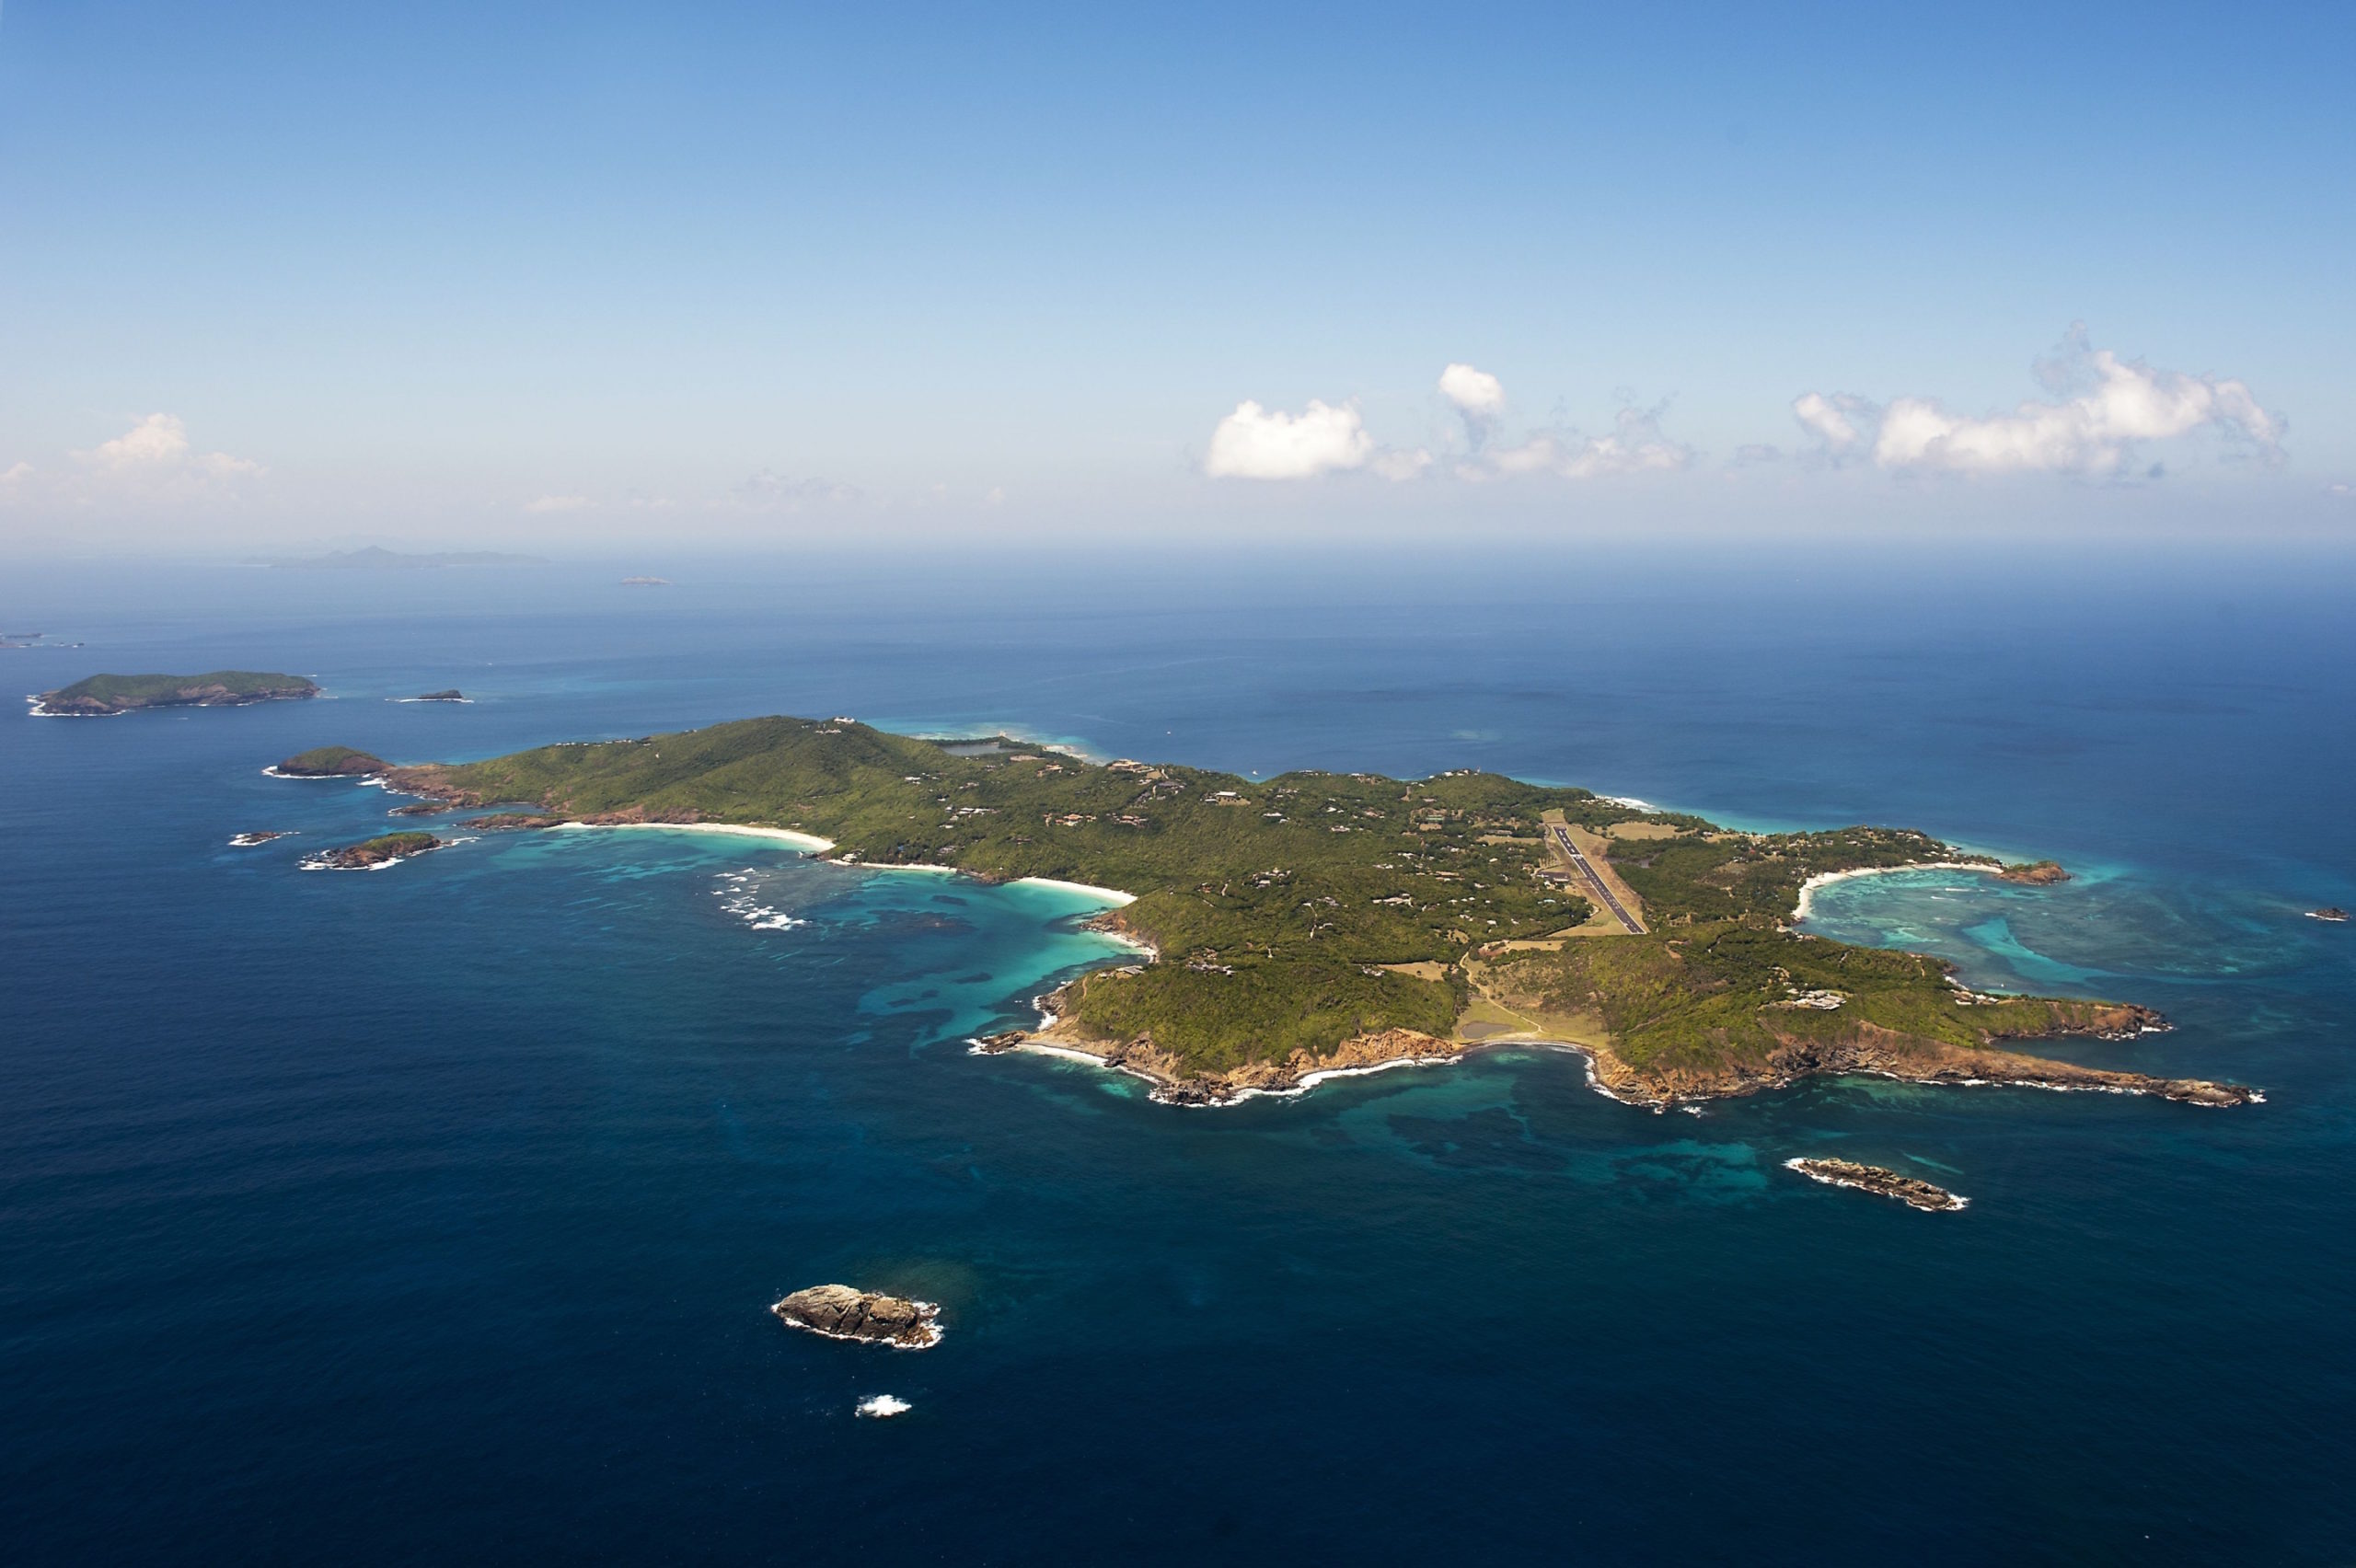 Южная часть архипелага малых антильских островов называется. Сент-Винсент и Гренадины остров Мюстик. Тортуга остров в Карибском море. Архипелаг малых Антильских островов. Остров Мюстик в Карибском море.